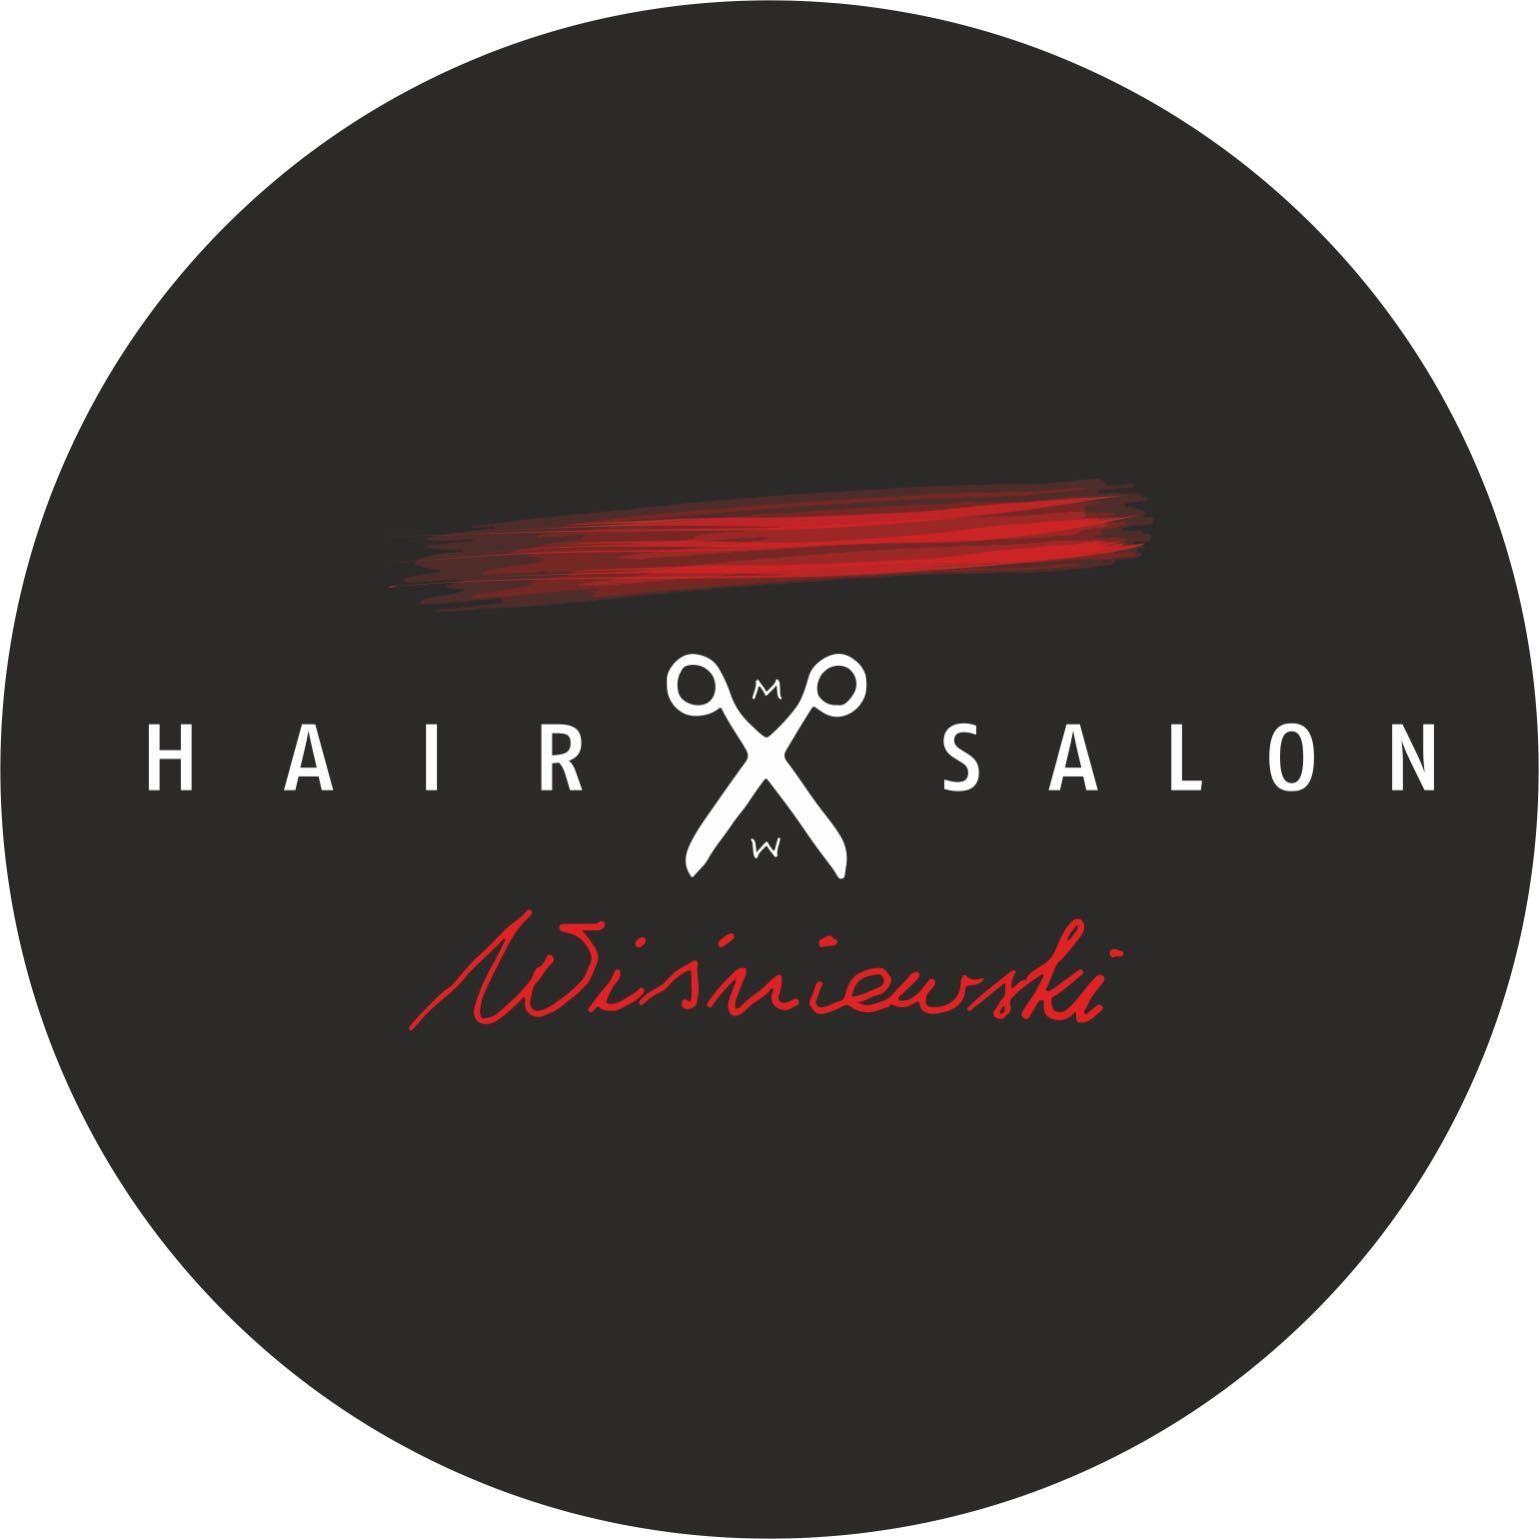 Hair Salon Wiśniewski, Łucka 18 lokal użytkowy 6, 00-845, Warszawa, Wola